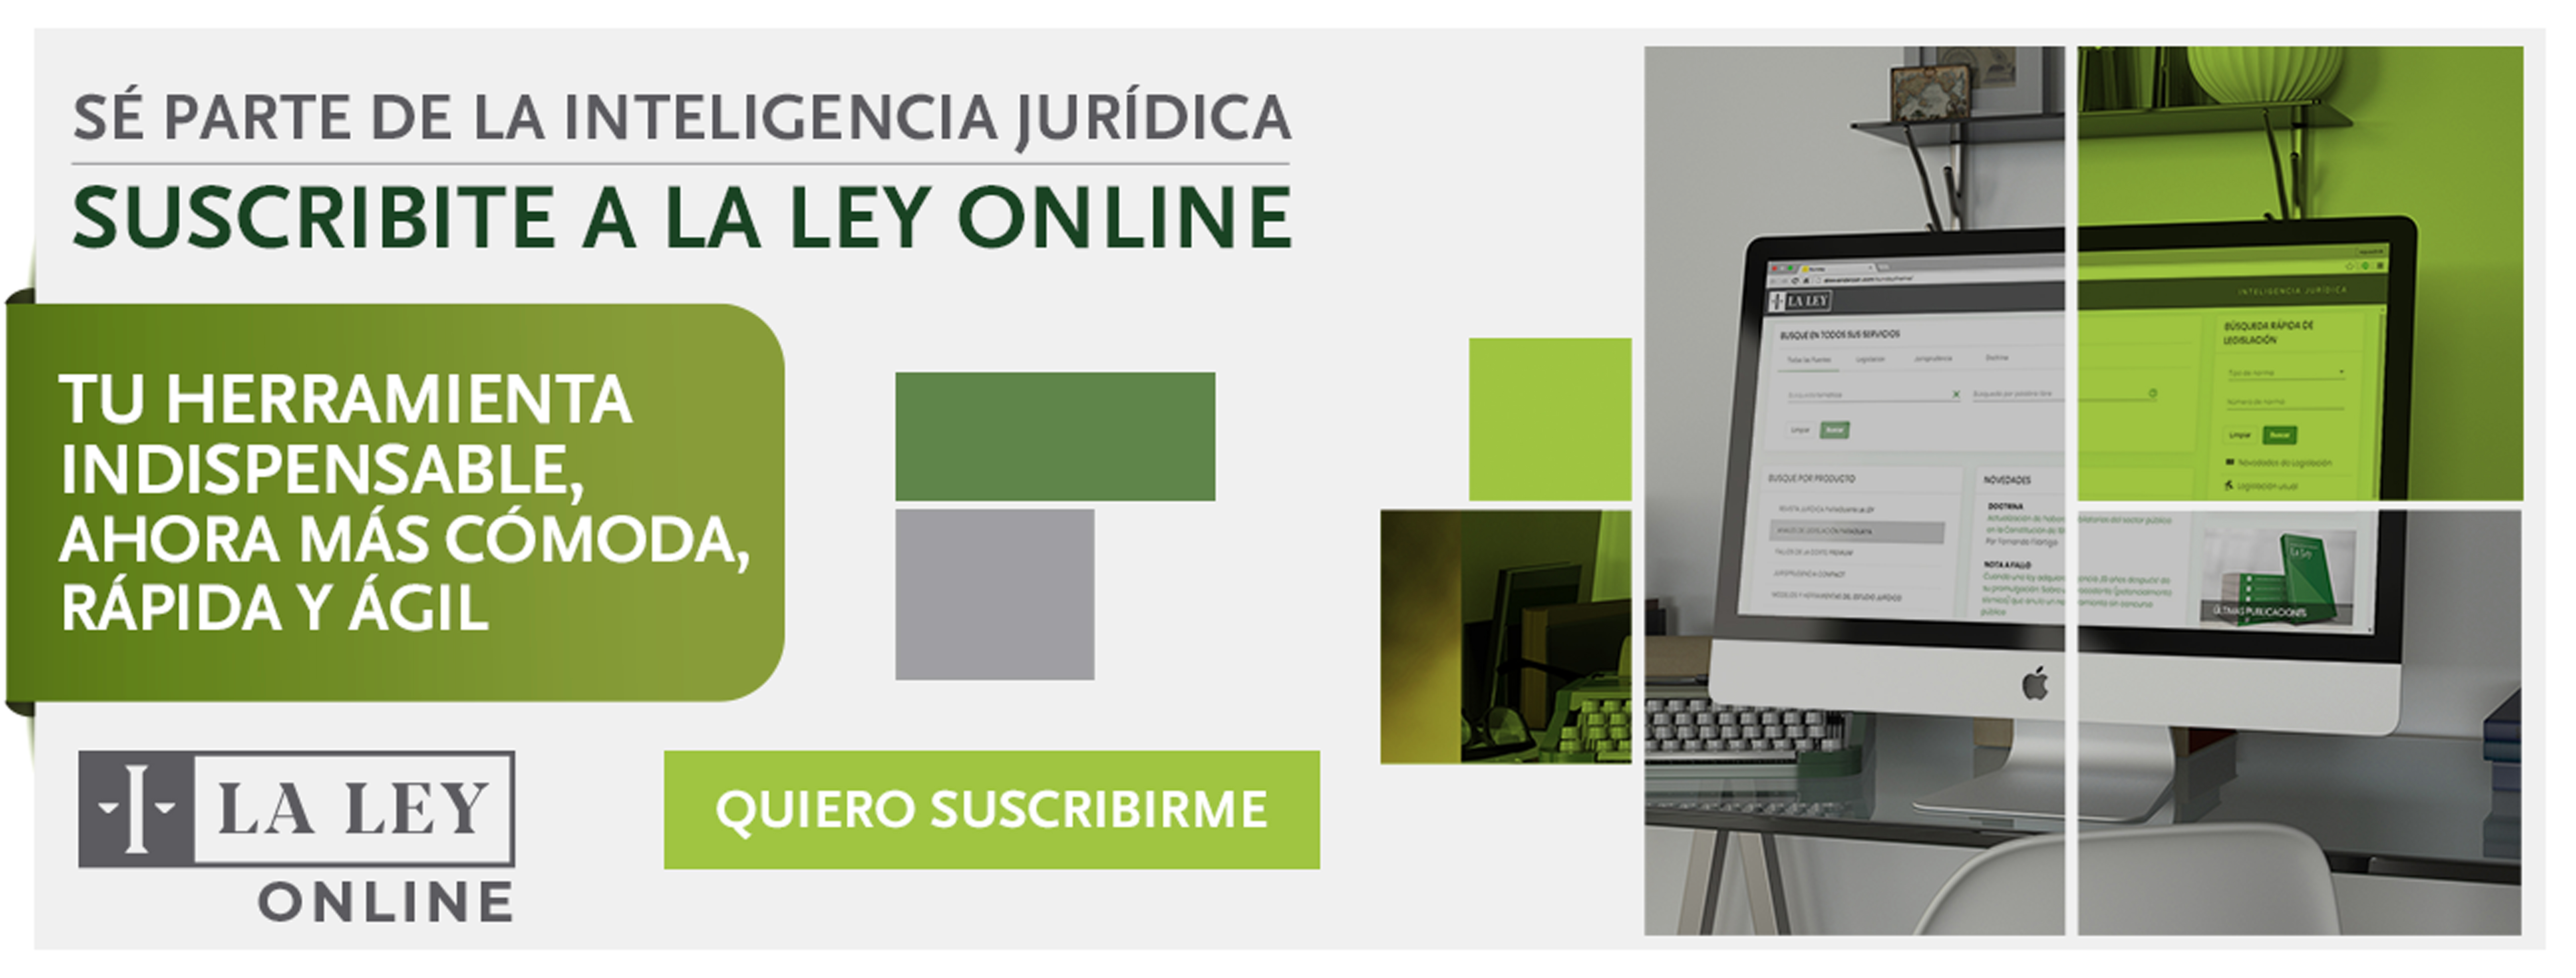 La Ley Online